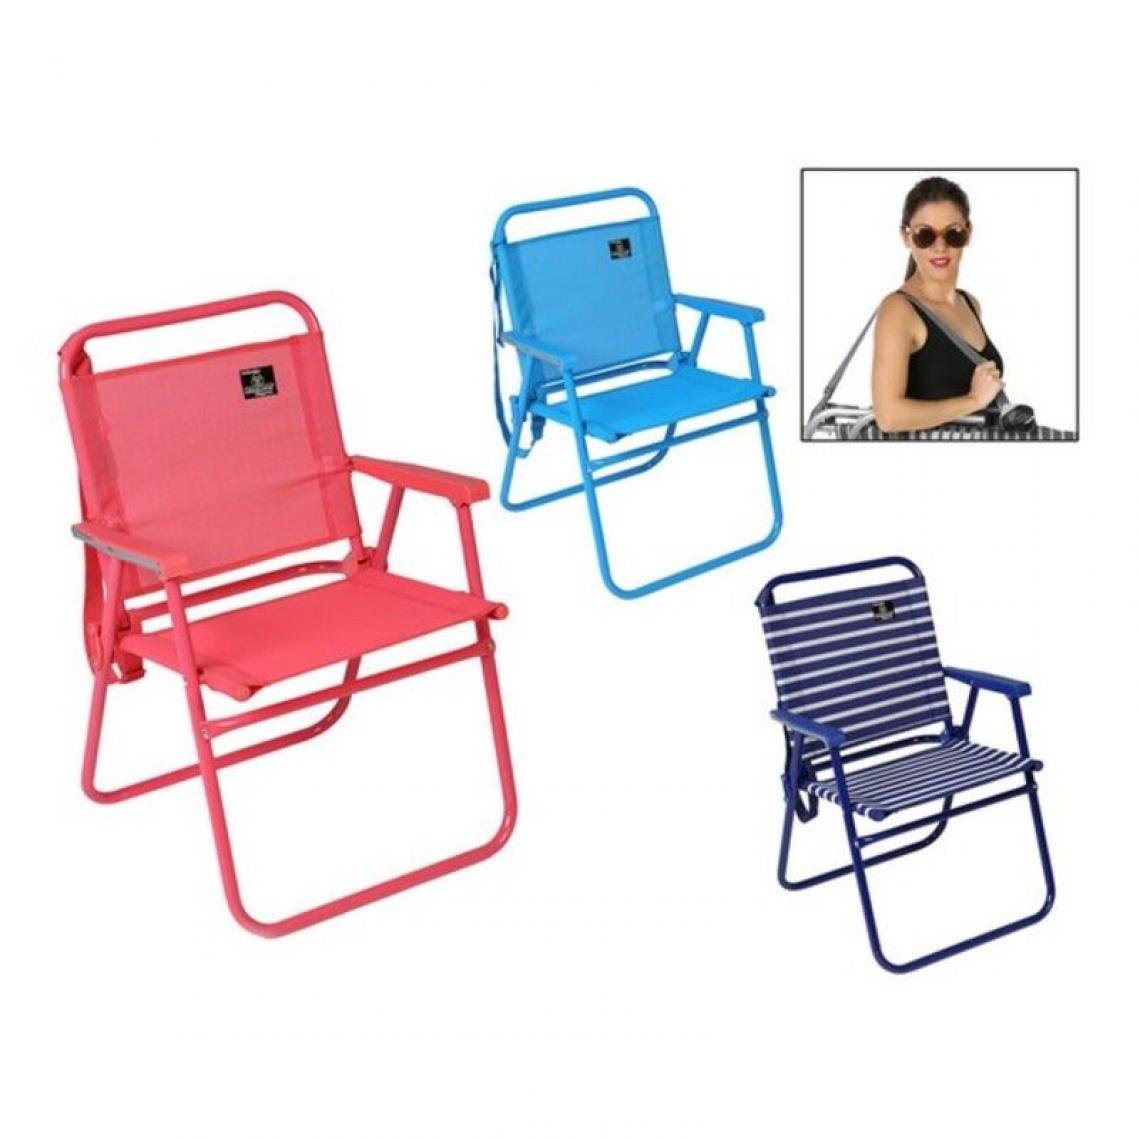 Outdoor - Chaise de plage Pliable (57 X 57 x 79 cm) - Transats, chaises longues